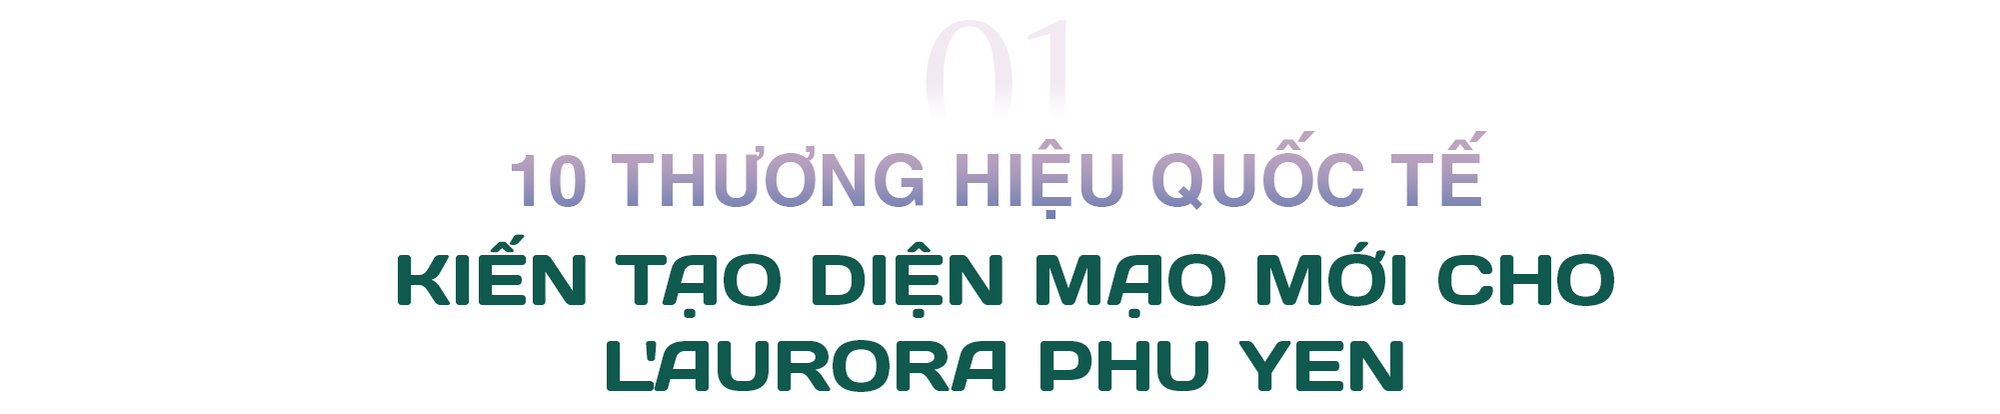 Diện mạo mới của LAurora Phu Yen: Cuộc đổ bộ đa tiện ích nâng tầm giá trịbền vững cho dự án - Ảnh 3.